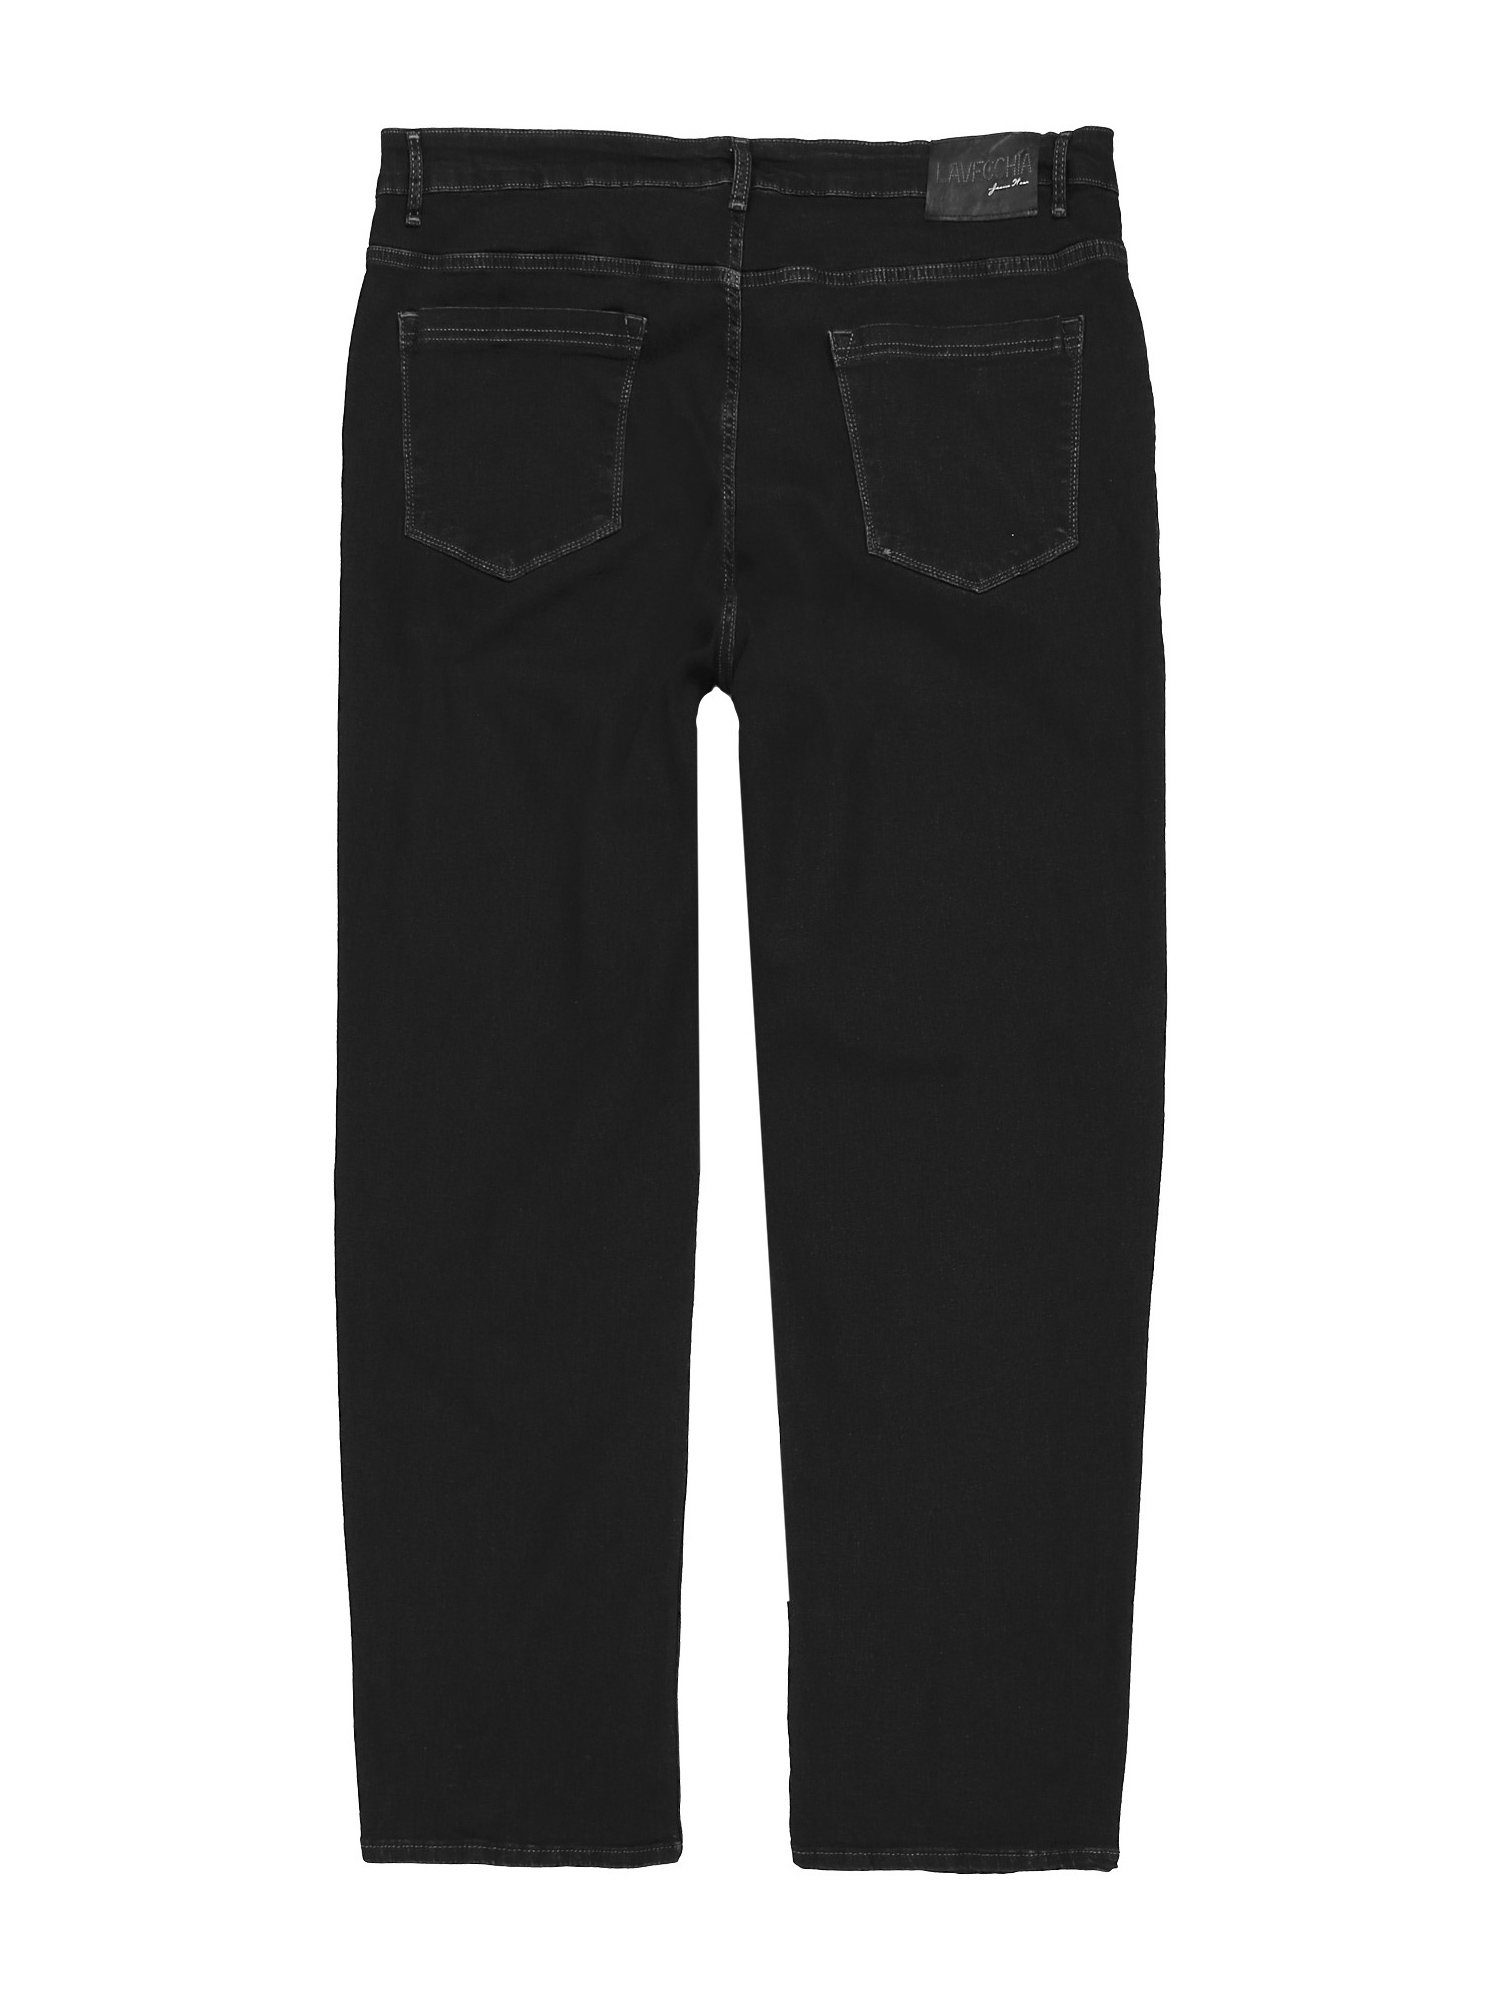 Übergrößen mit Elasthan Lavecchia Stretch schwarz Jeanshose Herren Comfort-fit-Jeans LV-501